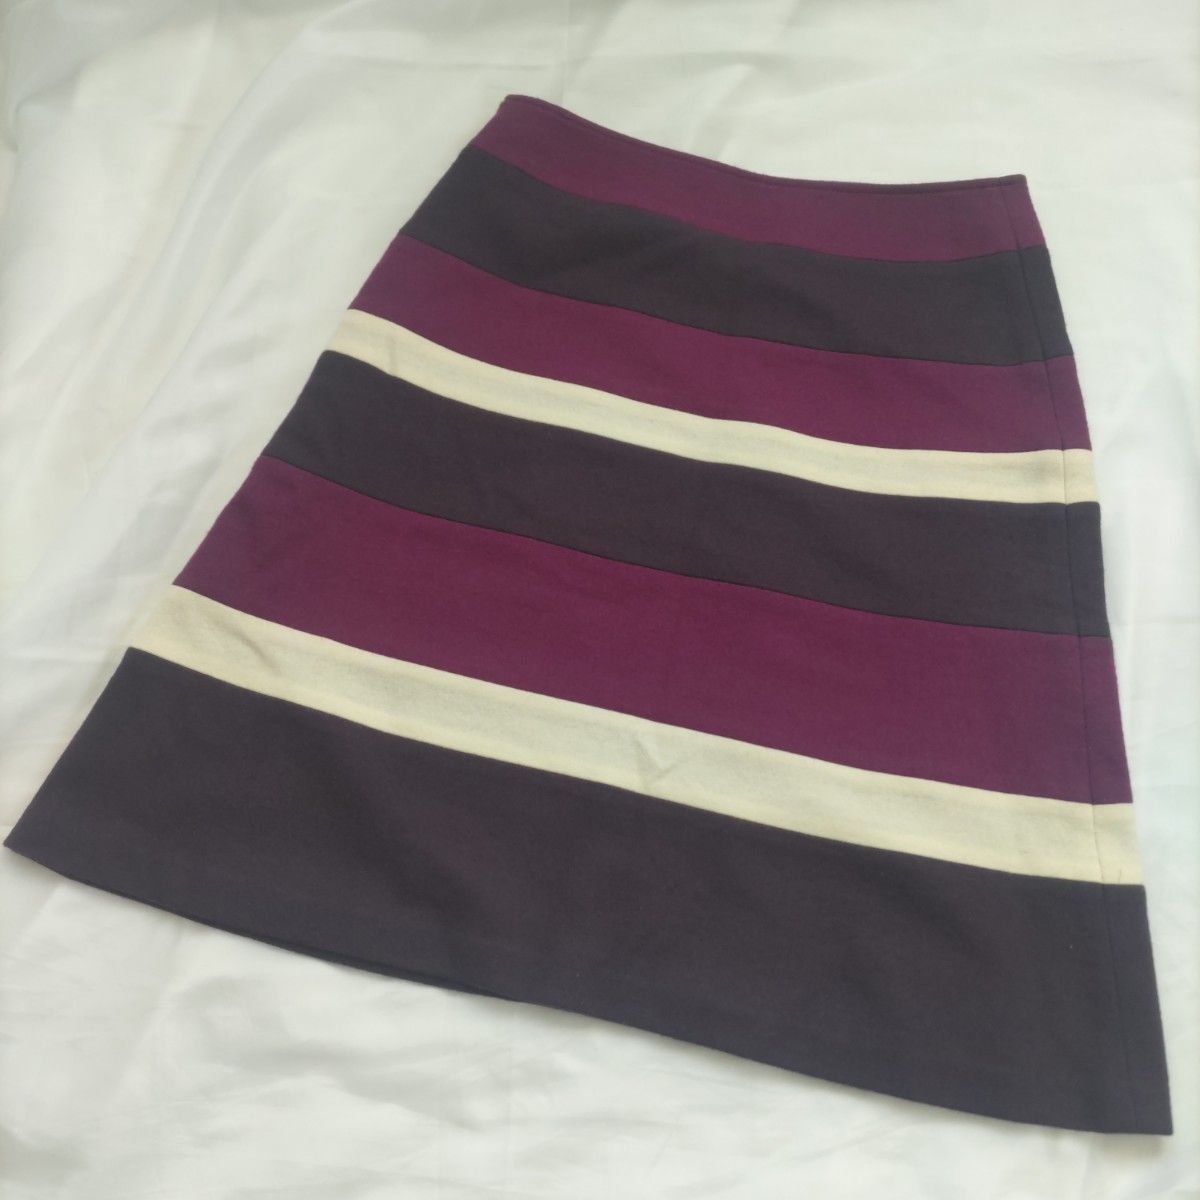 Anatelier アナトリエ ボーダースカート サイズ36 Sサイズ パープル 紫 台形 日本製 ワールド